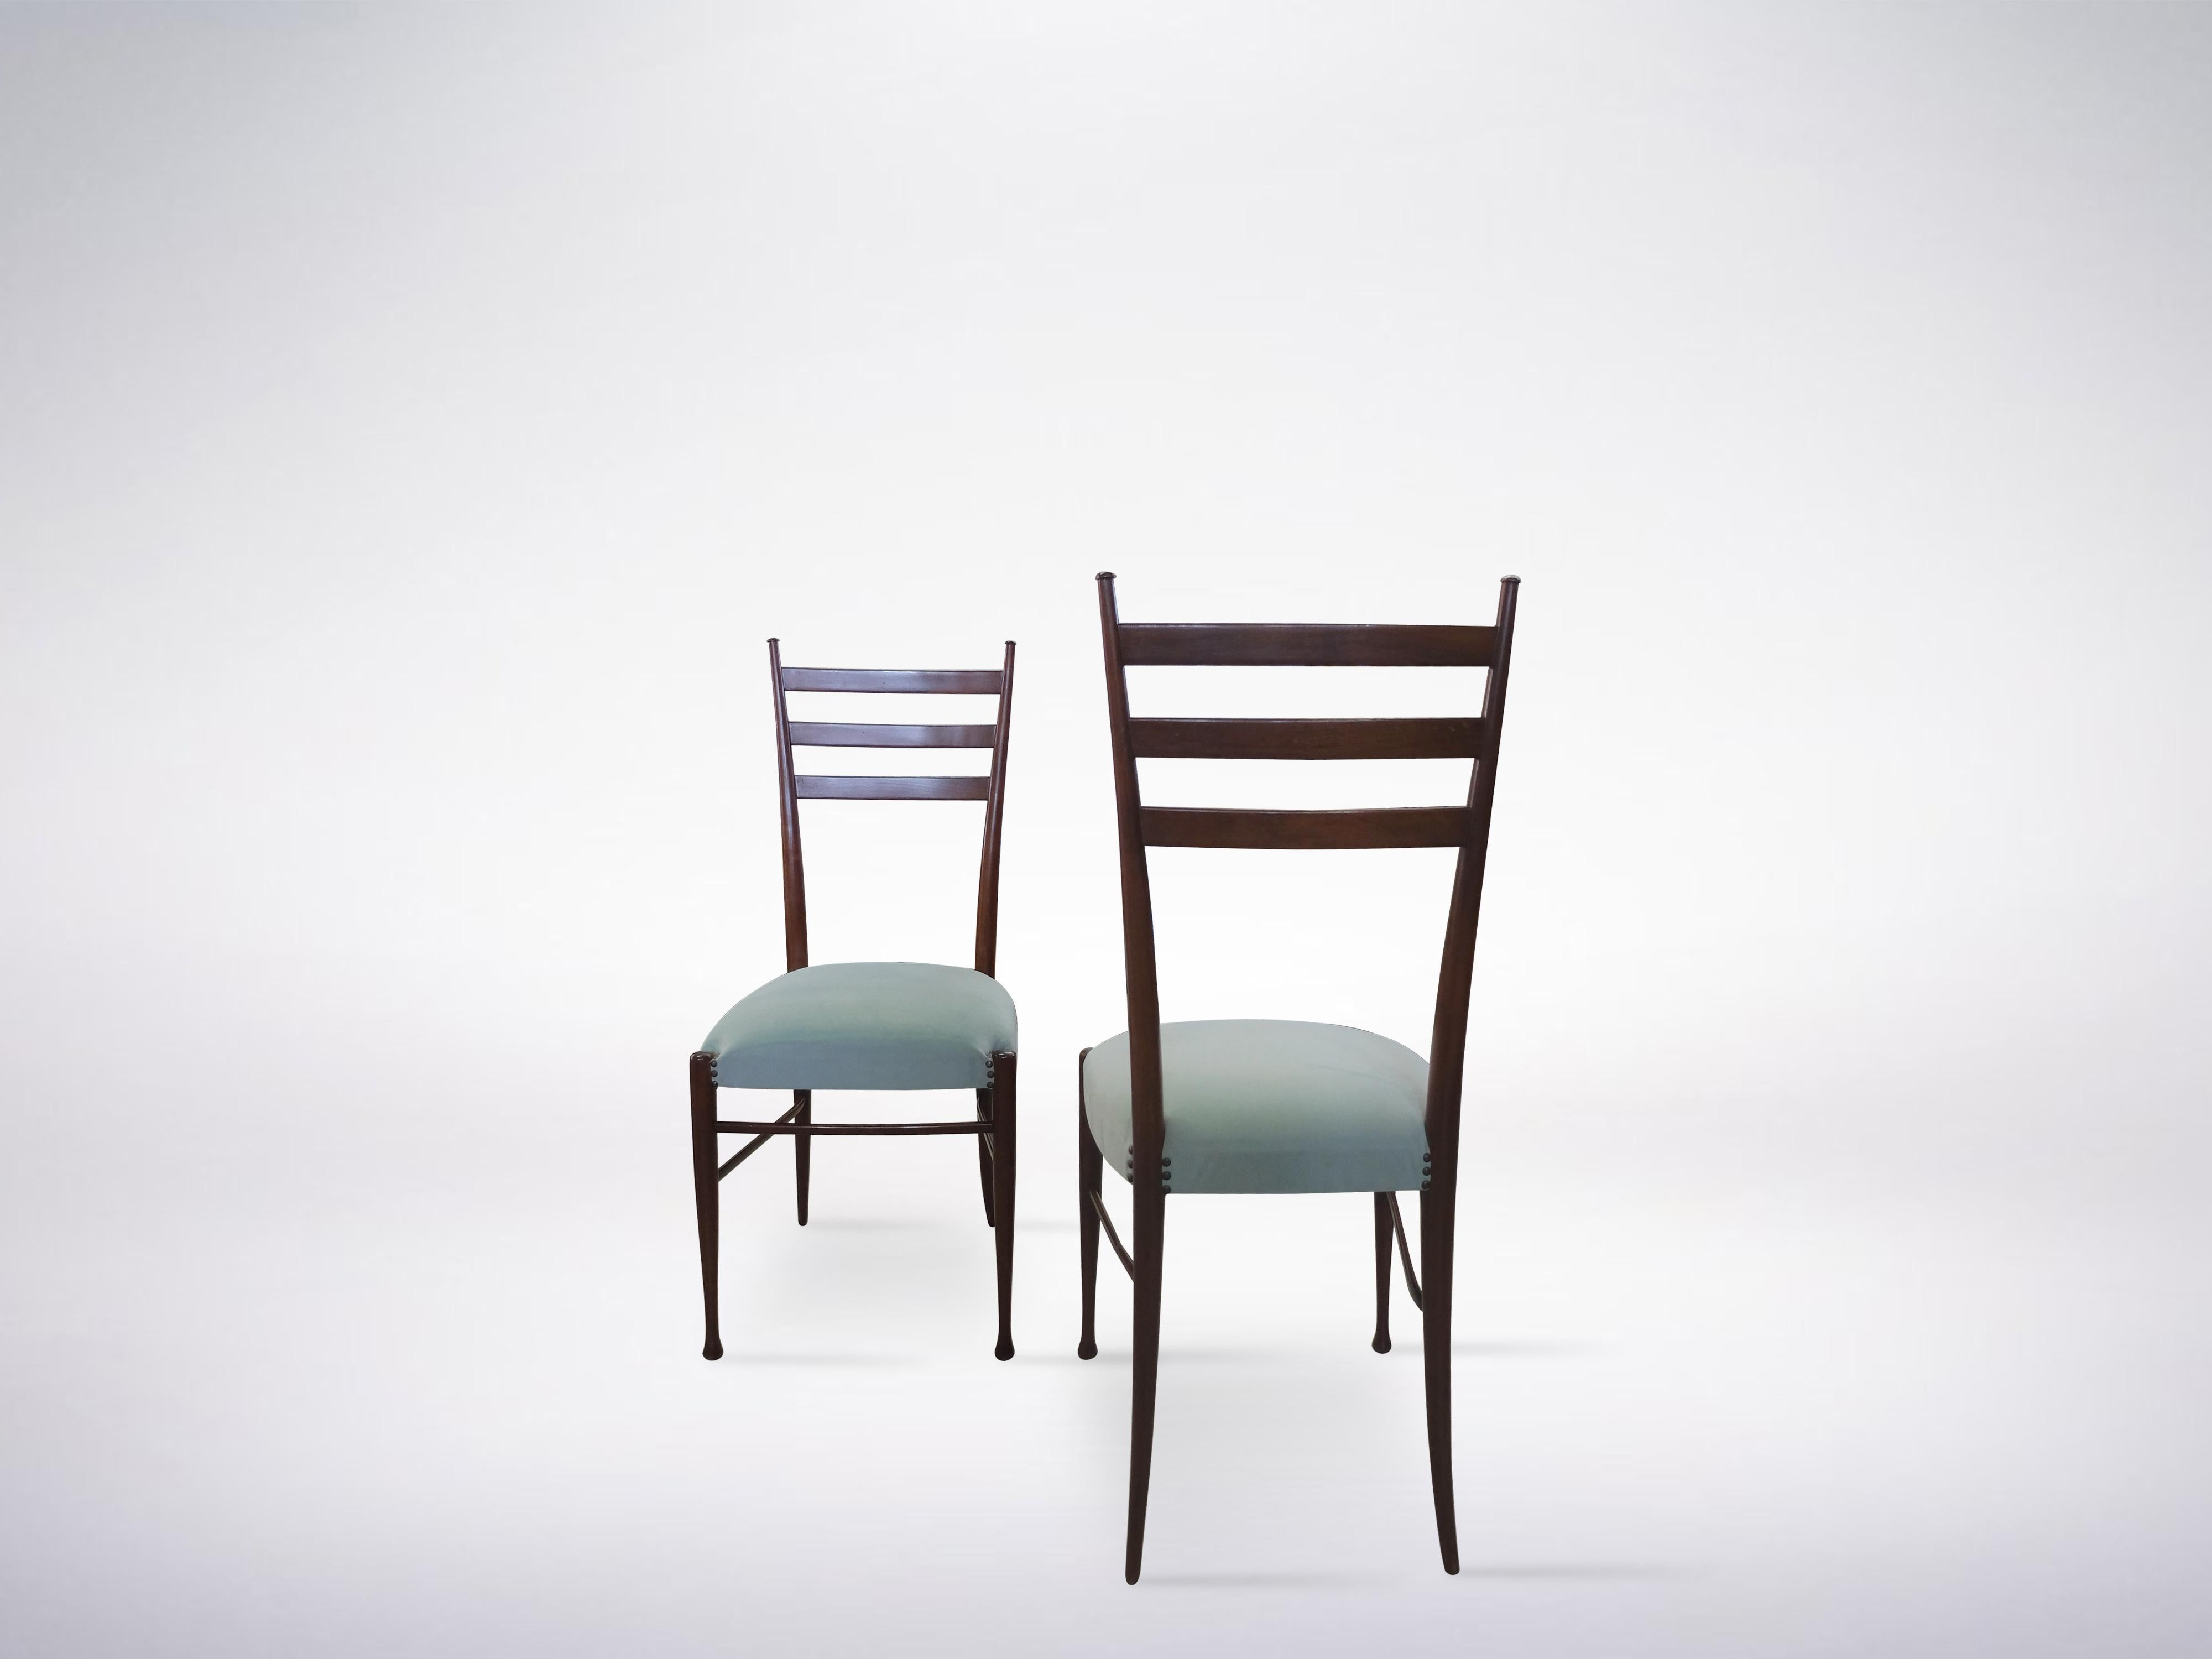 Gut erhaltener Satz von 4 Stühlen von Guglielmo Ulrich aus den 1960er Jahren.

Dieses wunderschöne Set aus vier Stühlen repräsentiert das reiche und stattliche kreative Erbe von Guglielmo Ulrich, dessen Formen auf elegante Weise Reichtum und